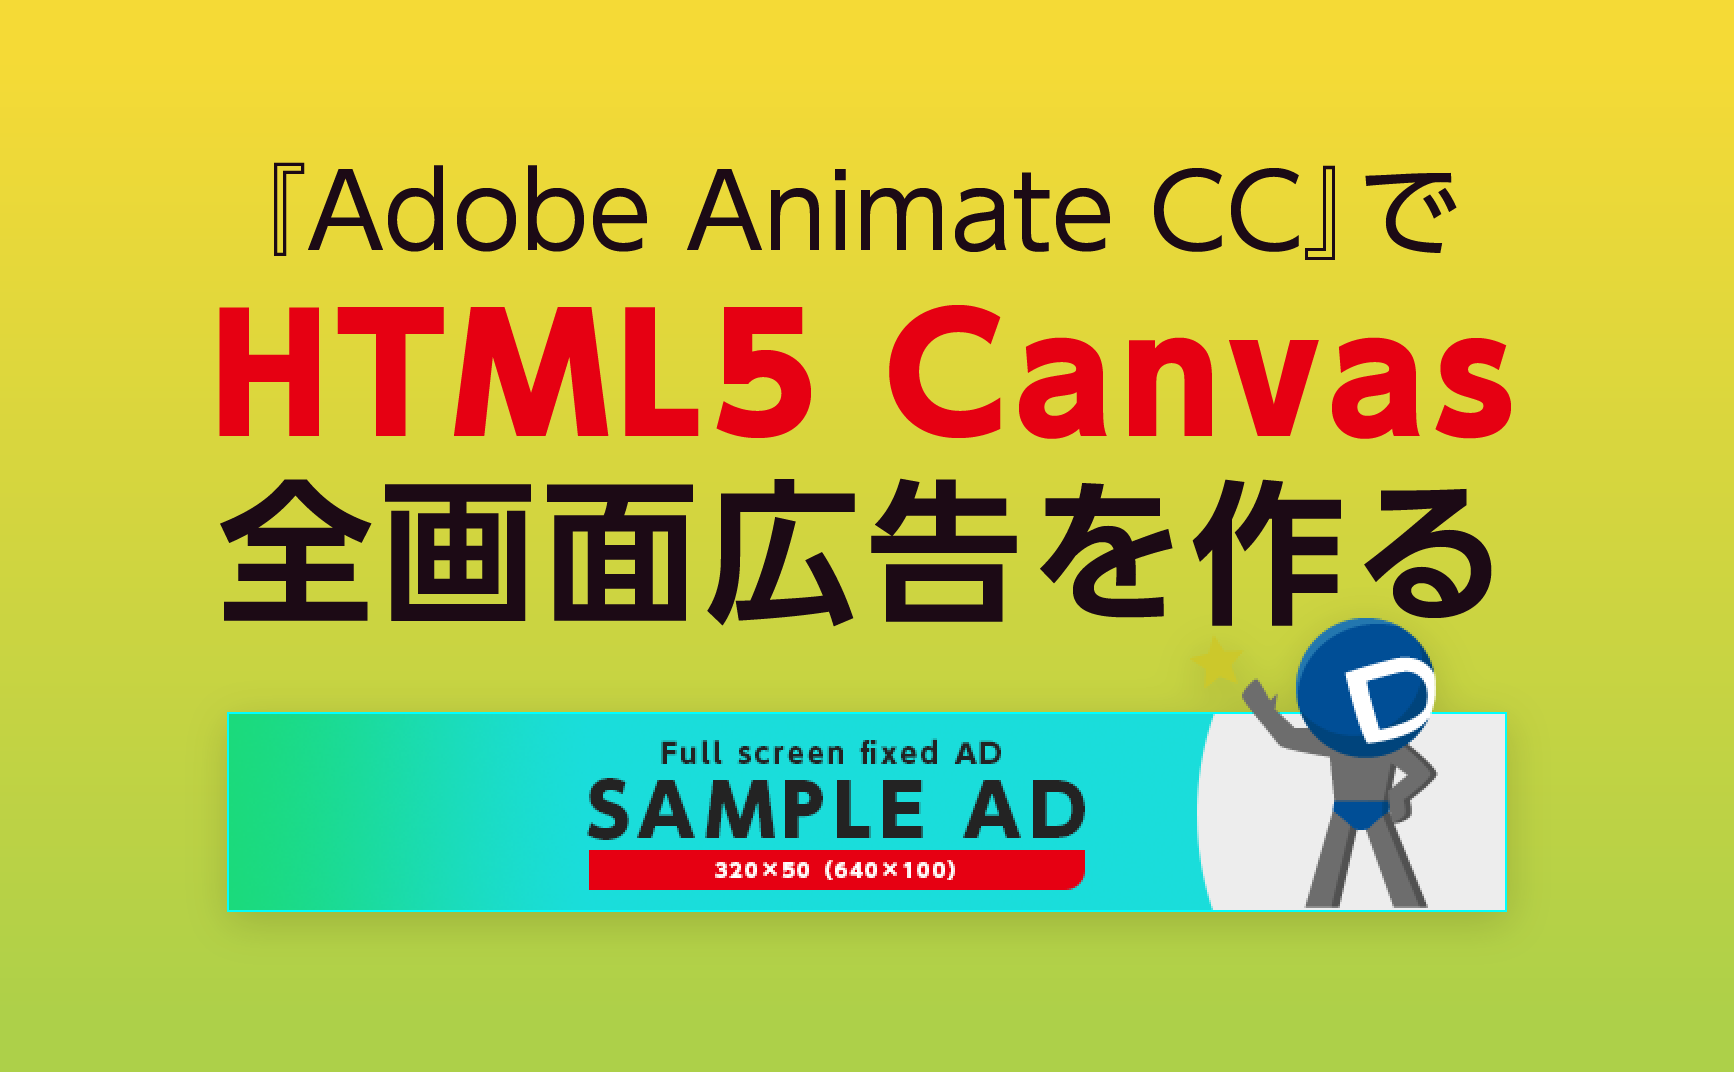 Adobe Animate CC 2020 HTML5 Canvas 広告バナーサンプルと作り方 | デジマースブログ